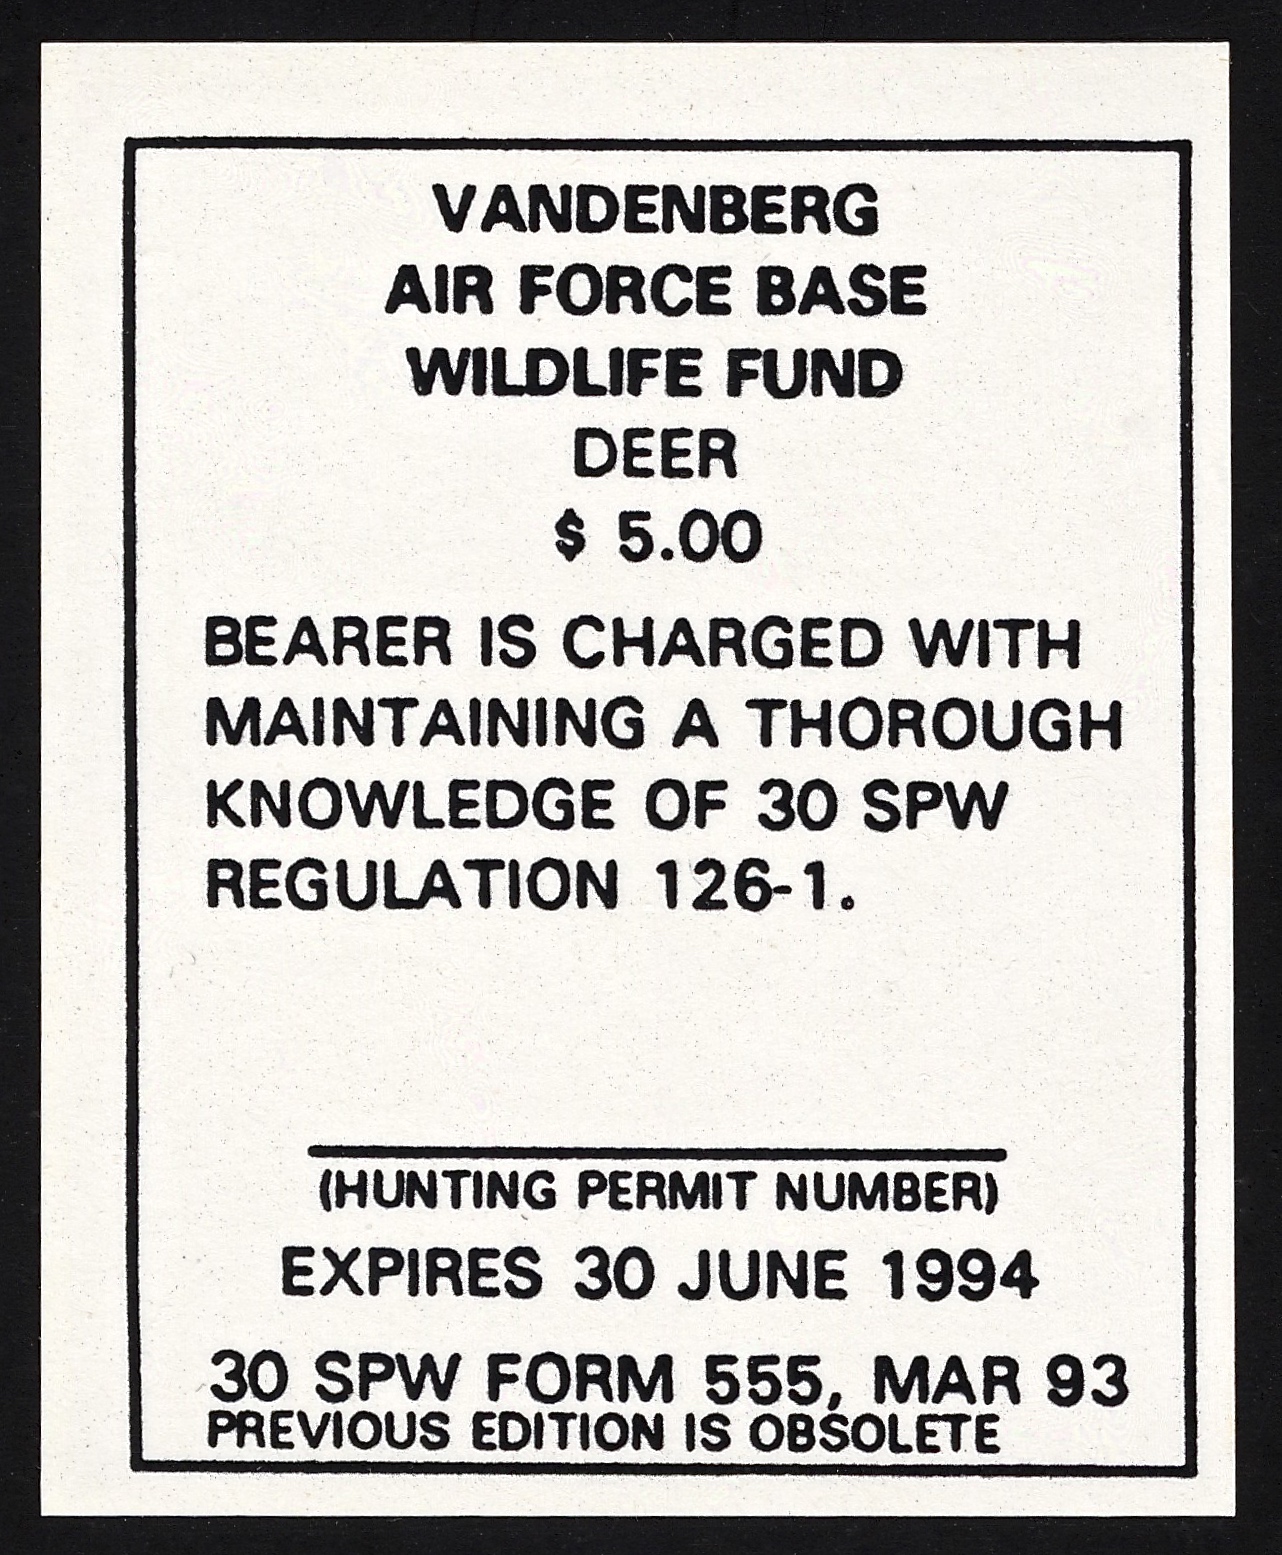 1993-94 VAFB Deer